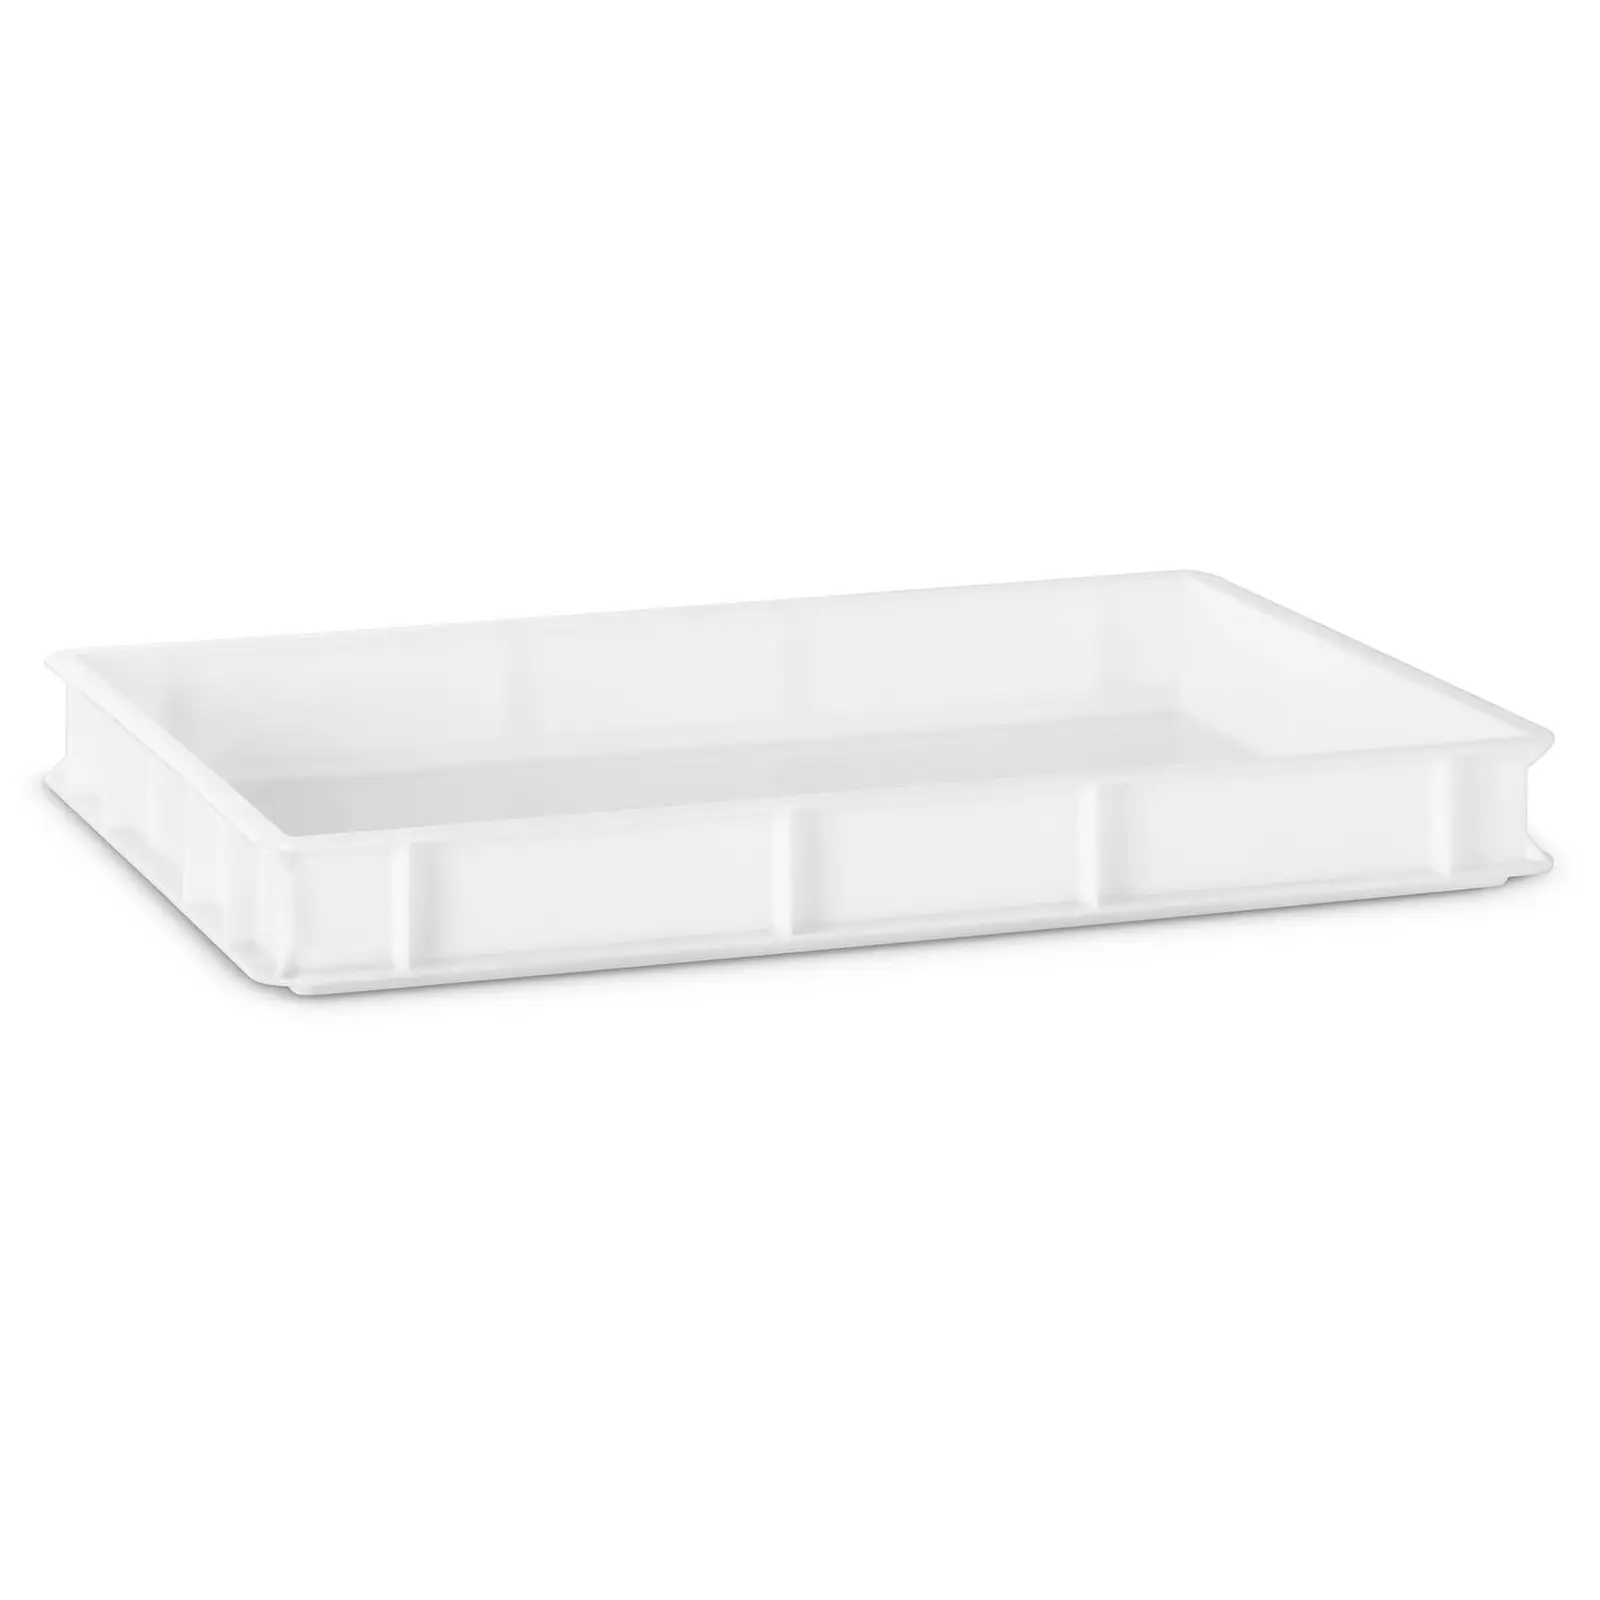 2 Stück Deckel für Pizzaballenbox Teig Aufbewahrungsbehälter 60 x 40 Gastlando 